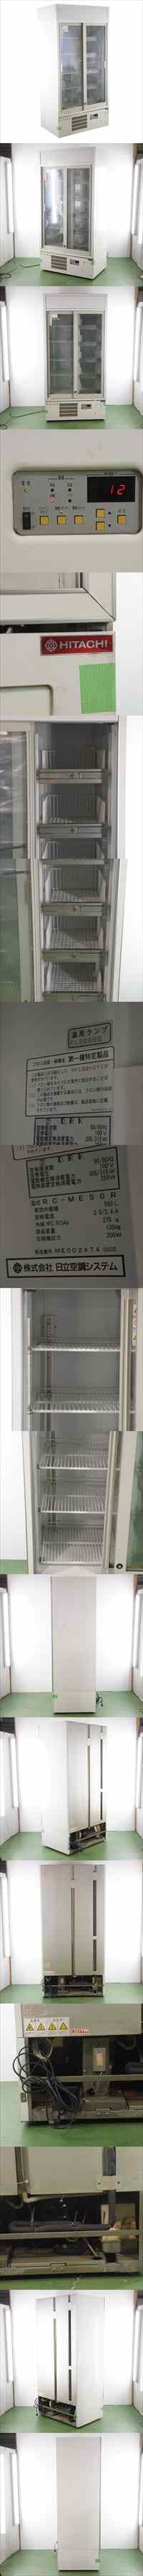 【入荷状況】[JB]USED 現状販売 HITACHI RC-ME50R 冷蔵庫 冷蔵ショーケース 550L[ST03681-0030] 環境測定器